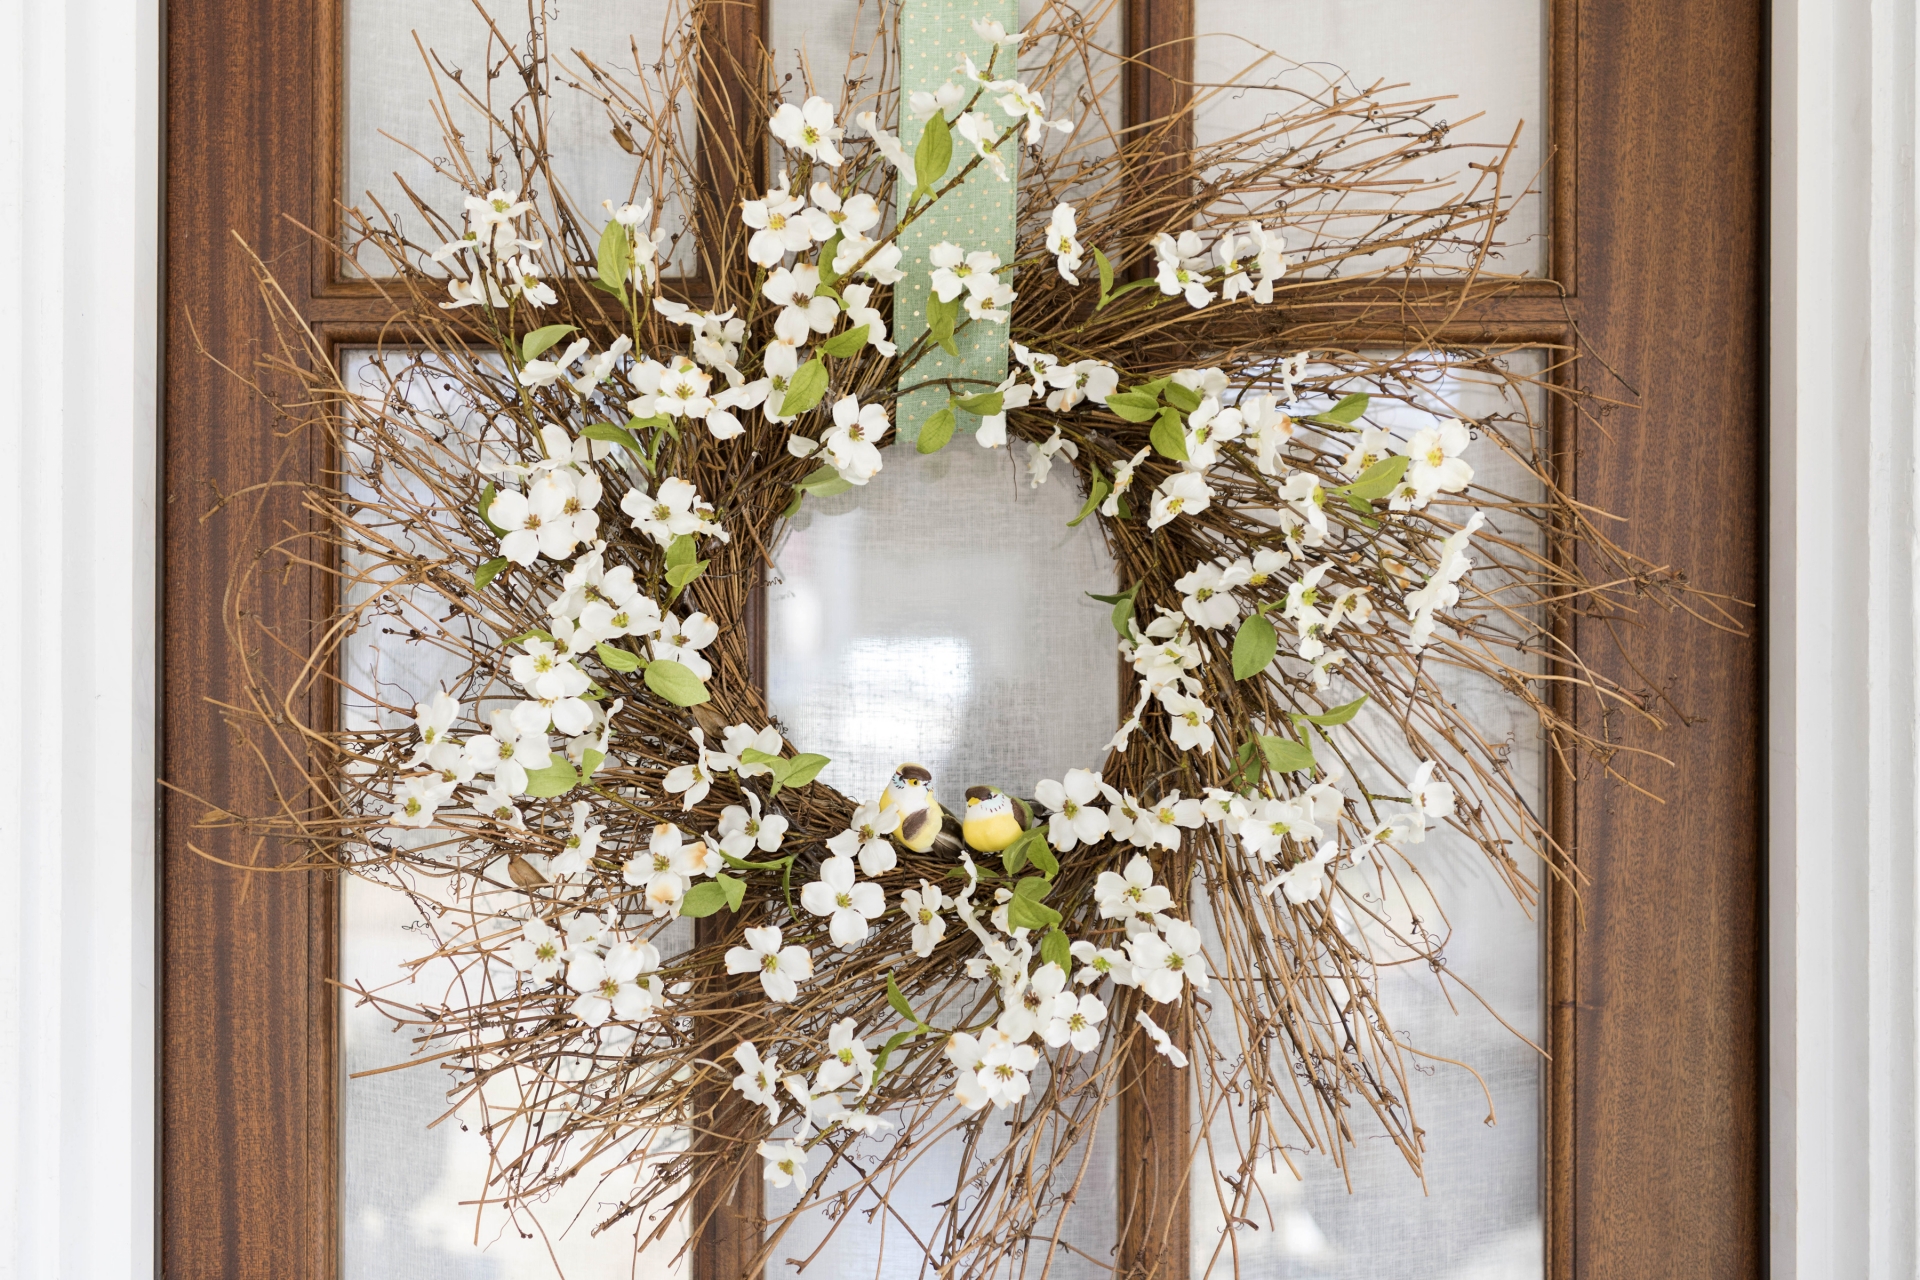 Vòng hoa treo cửa thường được dùng vào dịp Giáng sinh, tuy nhiên bạn vẫn có thể làm một vòng hoa xinh xắn khác để chào Thu của riêng mình.